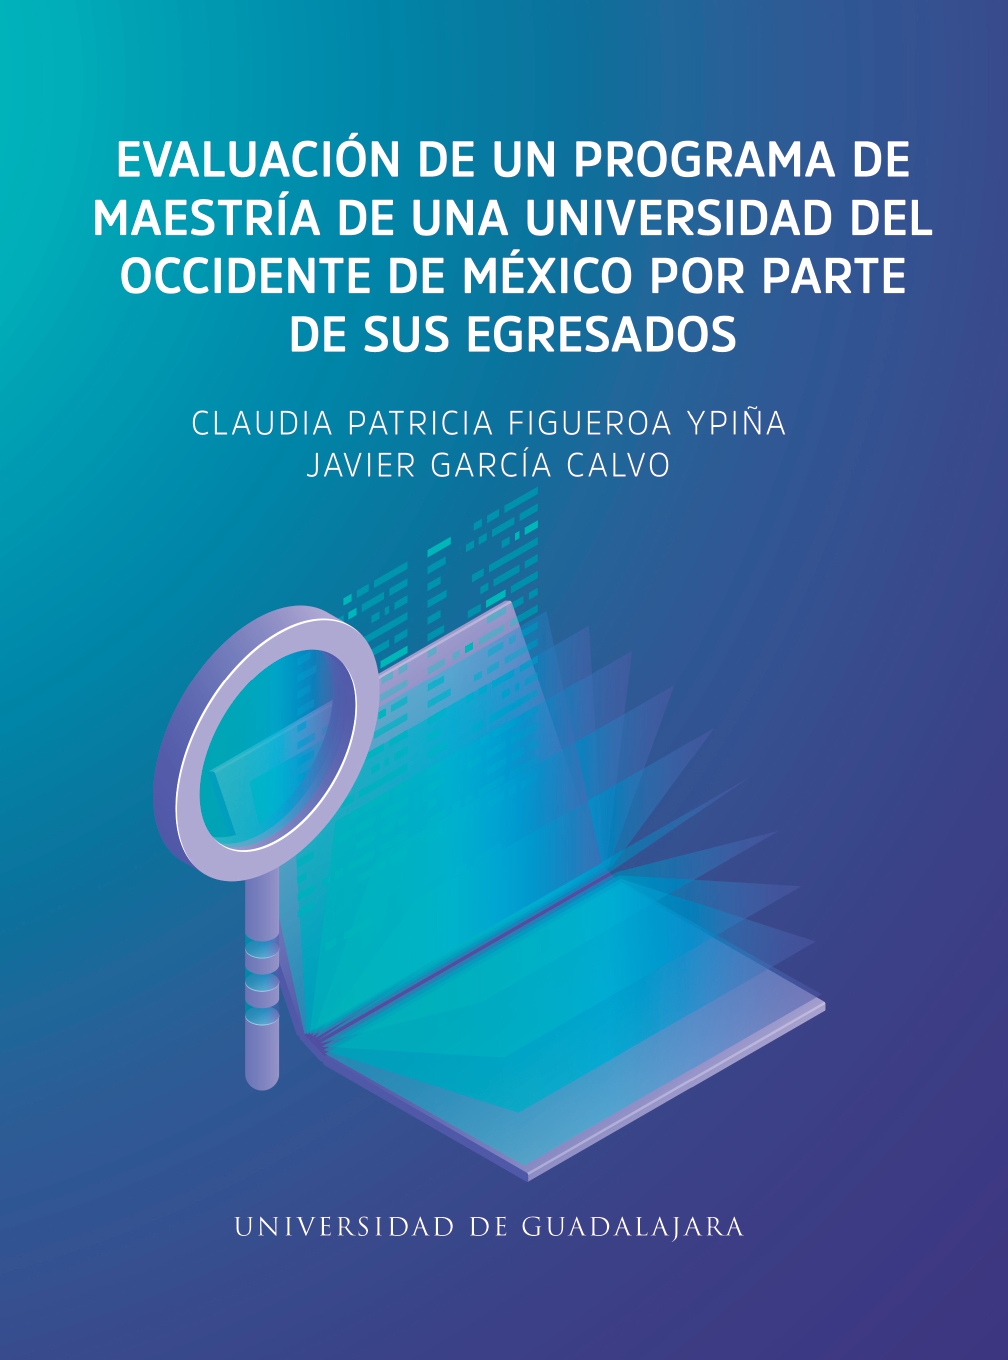 Evaluación de un programa de maestría de una universidad del occidente de México por parte de sus egresados<br />
                                            